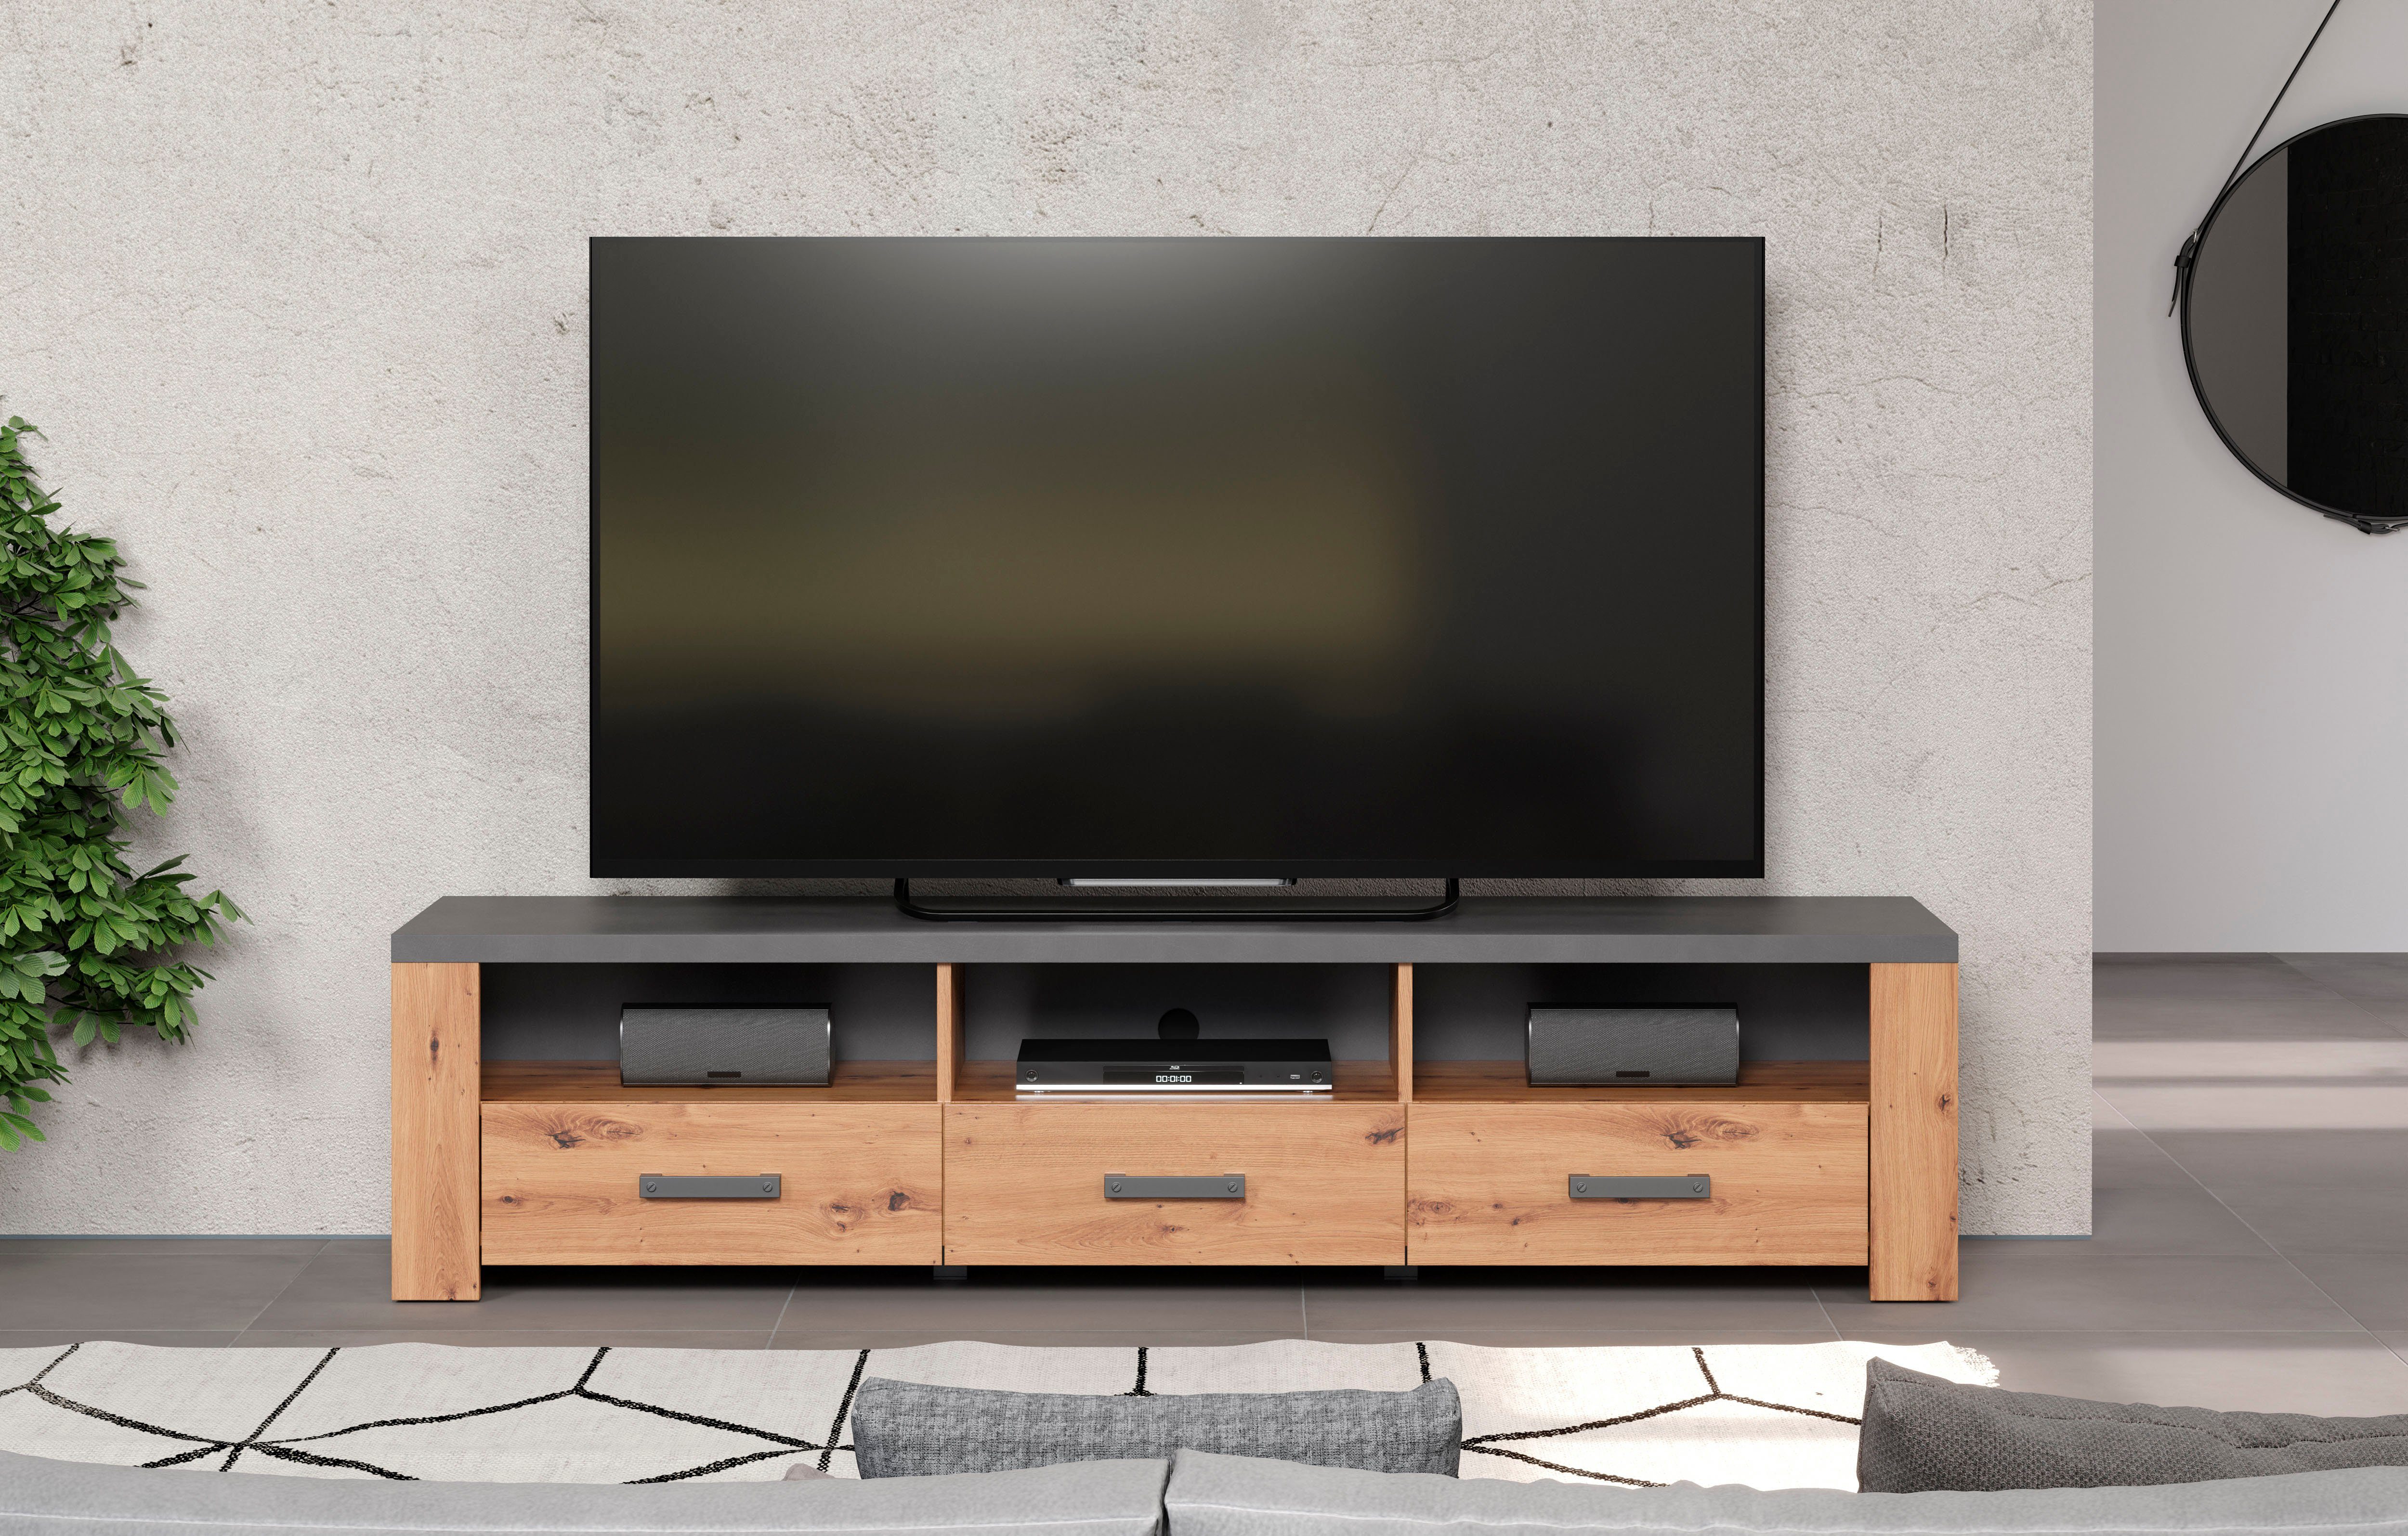 Home affaire Tv-meubel Ambres mat echt-hout-look, ca.-afm. bxh: 180x43 cm, tv-kast, eiken (1 stuk)